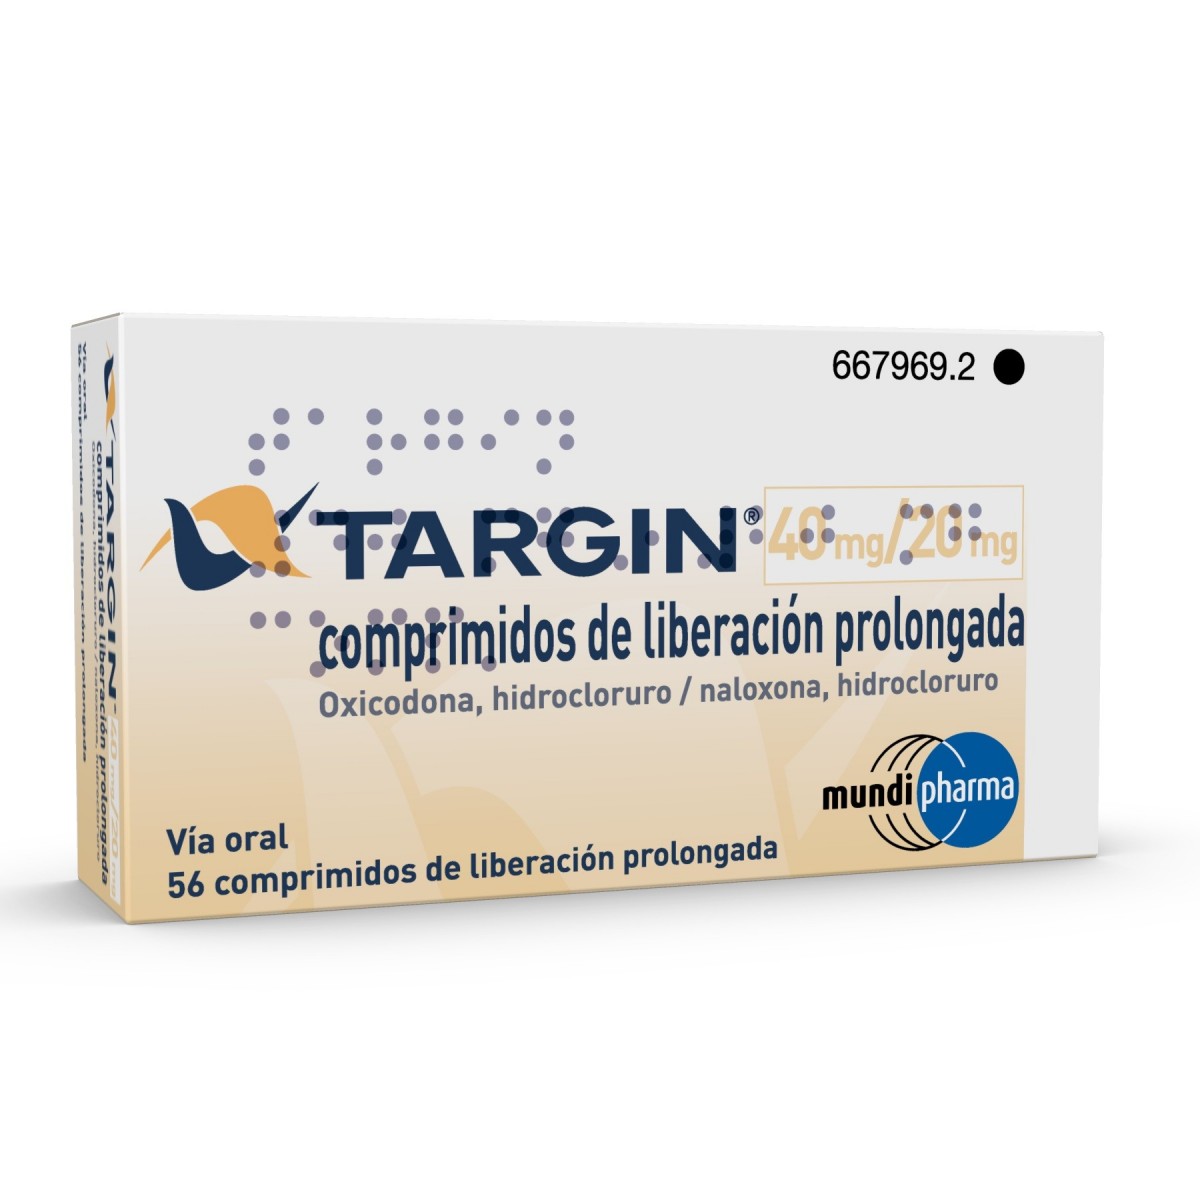 TARGIN 40 mg/20 mg COMPRIMIDOS DE LIBERACION PROLONGADA , 56 comprimidos fotografía del envase.